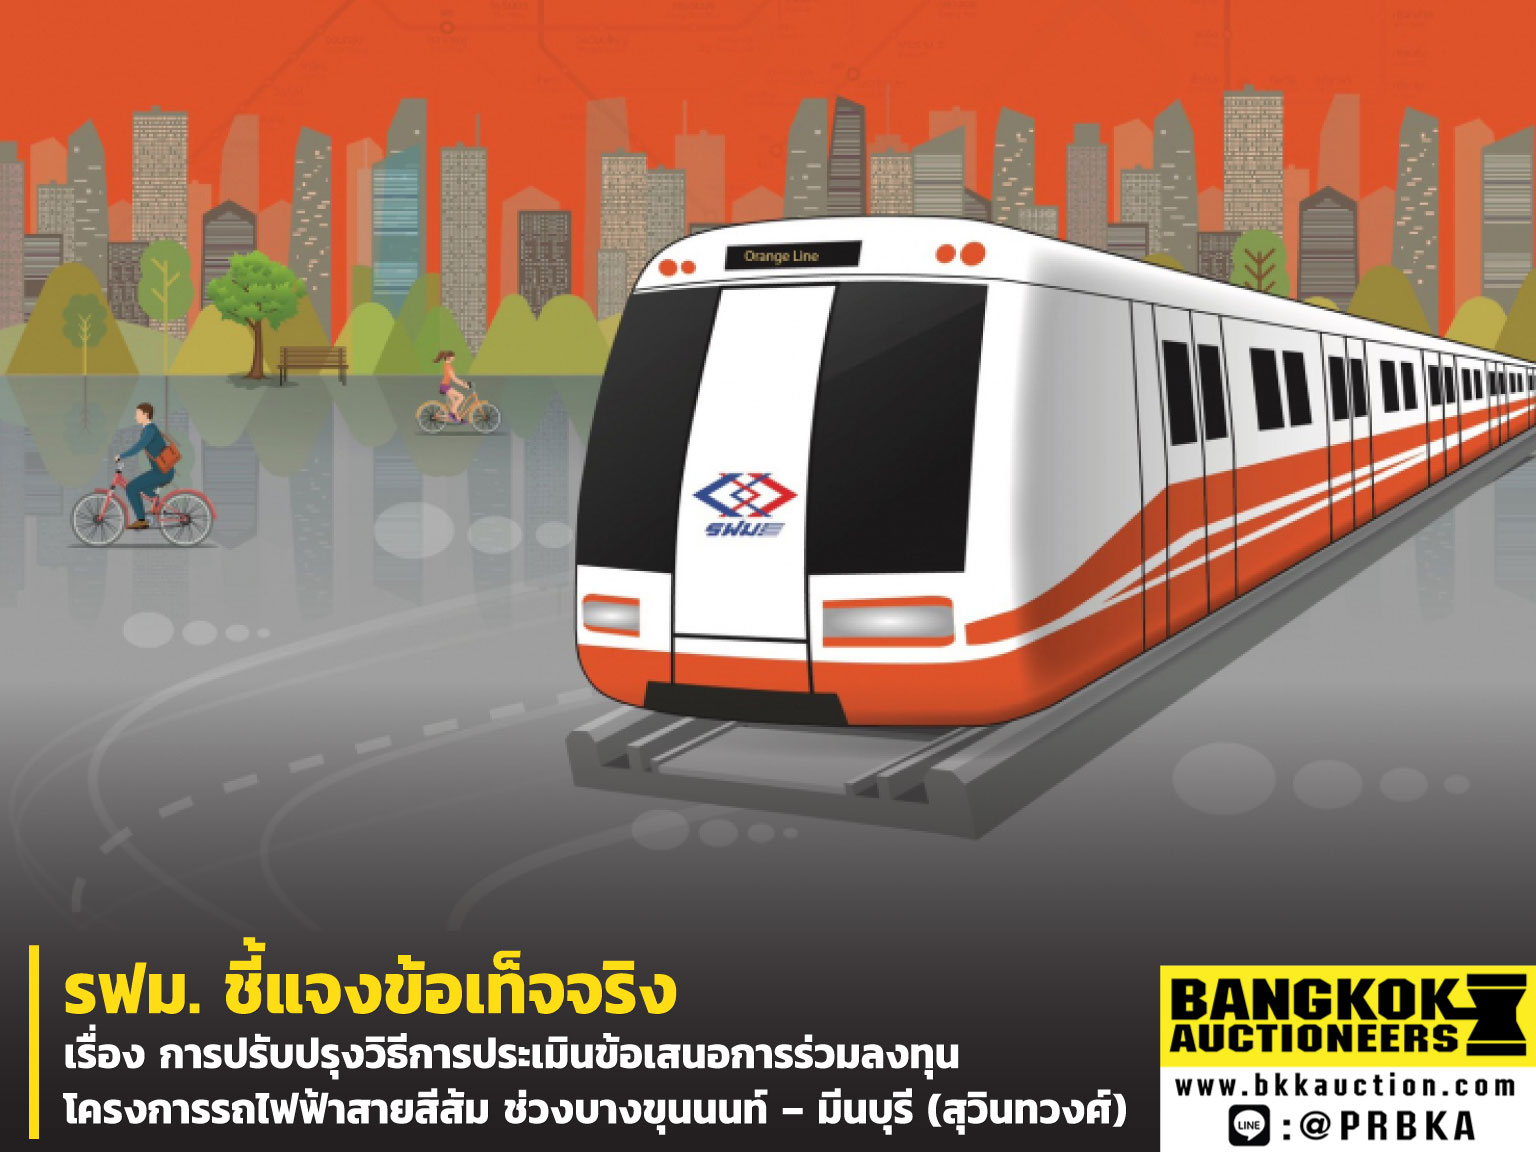 โครงการรถไฟฟ้าสายสีส้ม ช่วงบางขุนนนท์ – มีนบุรี (สุวินทวงศ์)